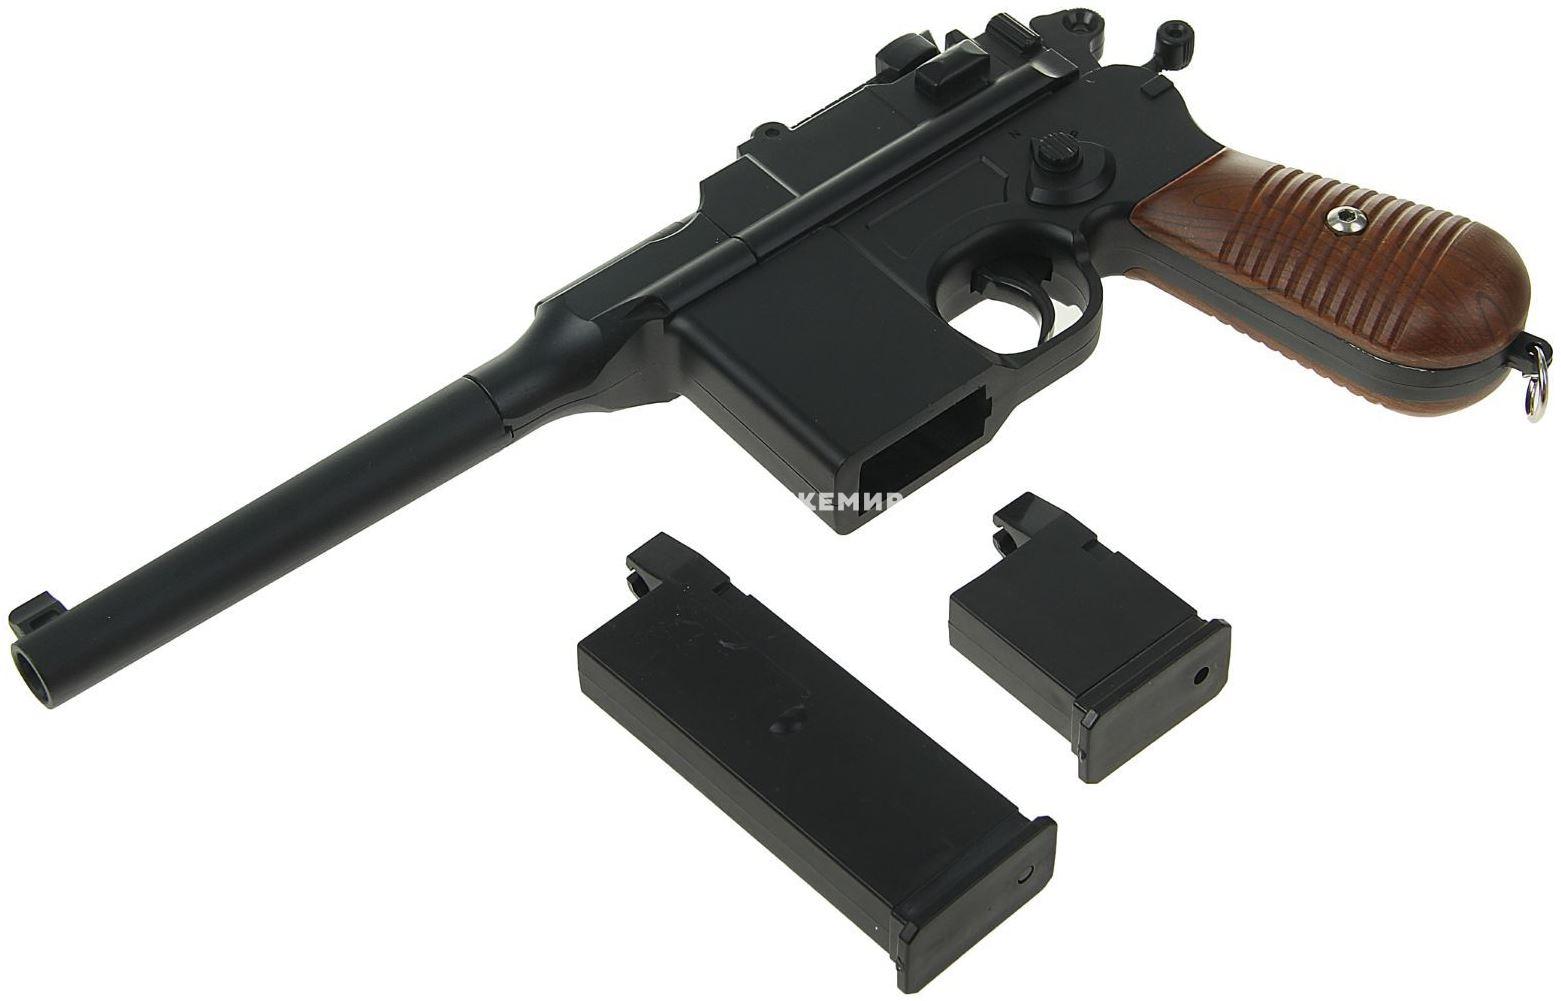 Страйкбольный пистолет пружинный мини Mauser 712 Galaxy G12